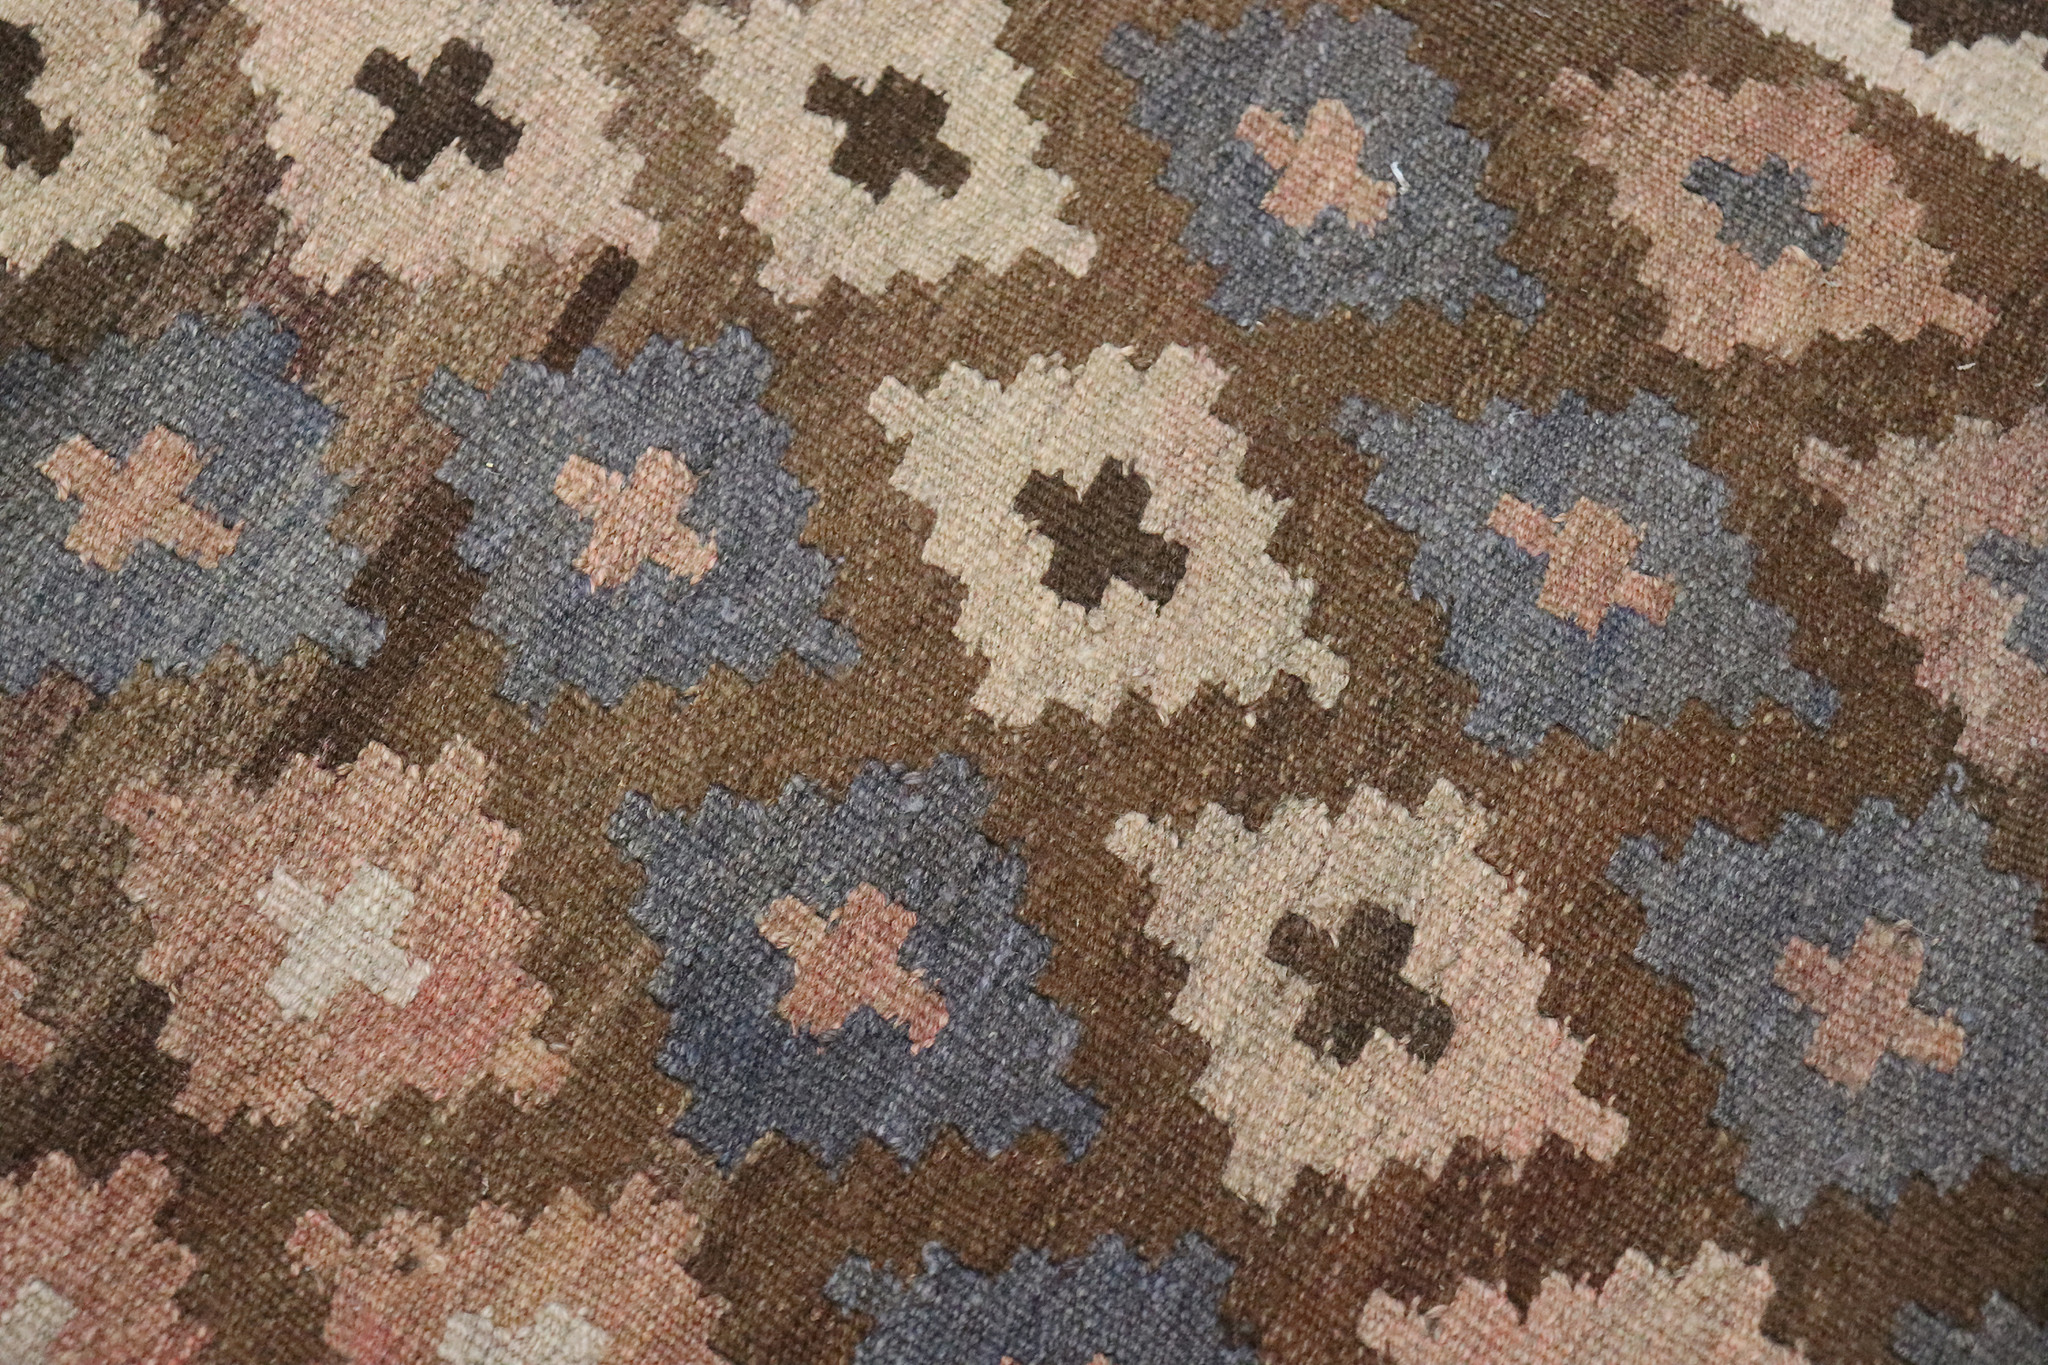 310x185 cm Afghan natural colors nomadic Kilim rug No: -  264